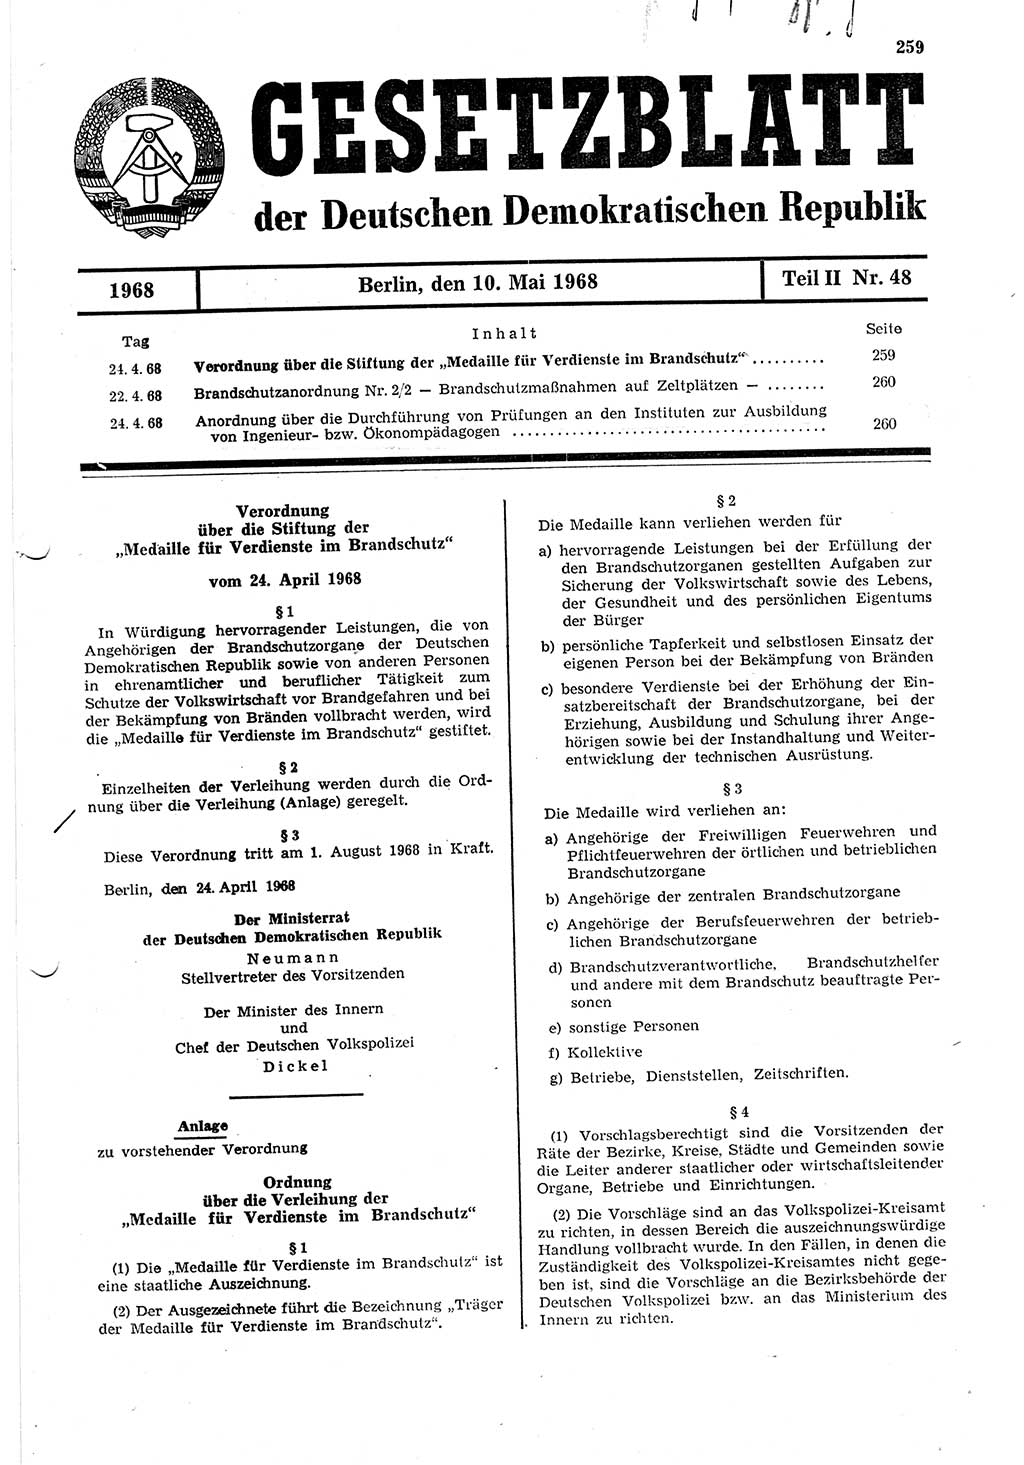 Gesetzblatt (GBl.) der Deutschen Demokratischen Republik (DDR) Teil ⅠⅠ 1968, Seite 259 (GBl. DDR ⅠⅠ 1968, S. 259)